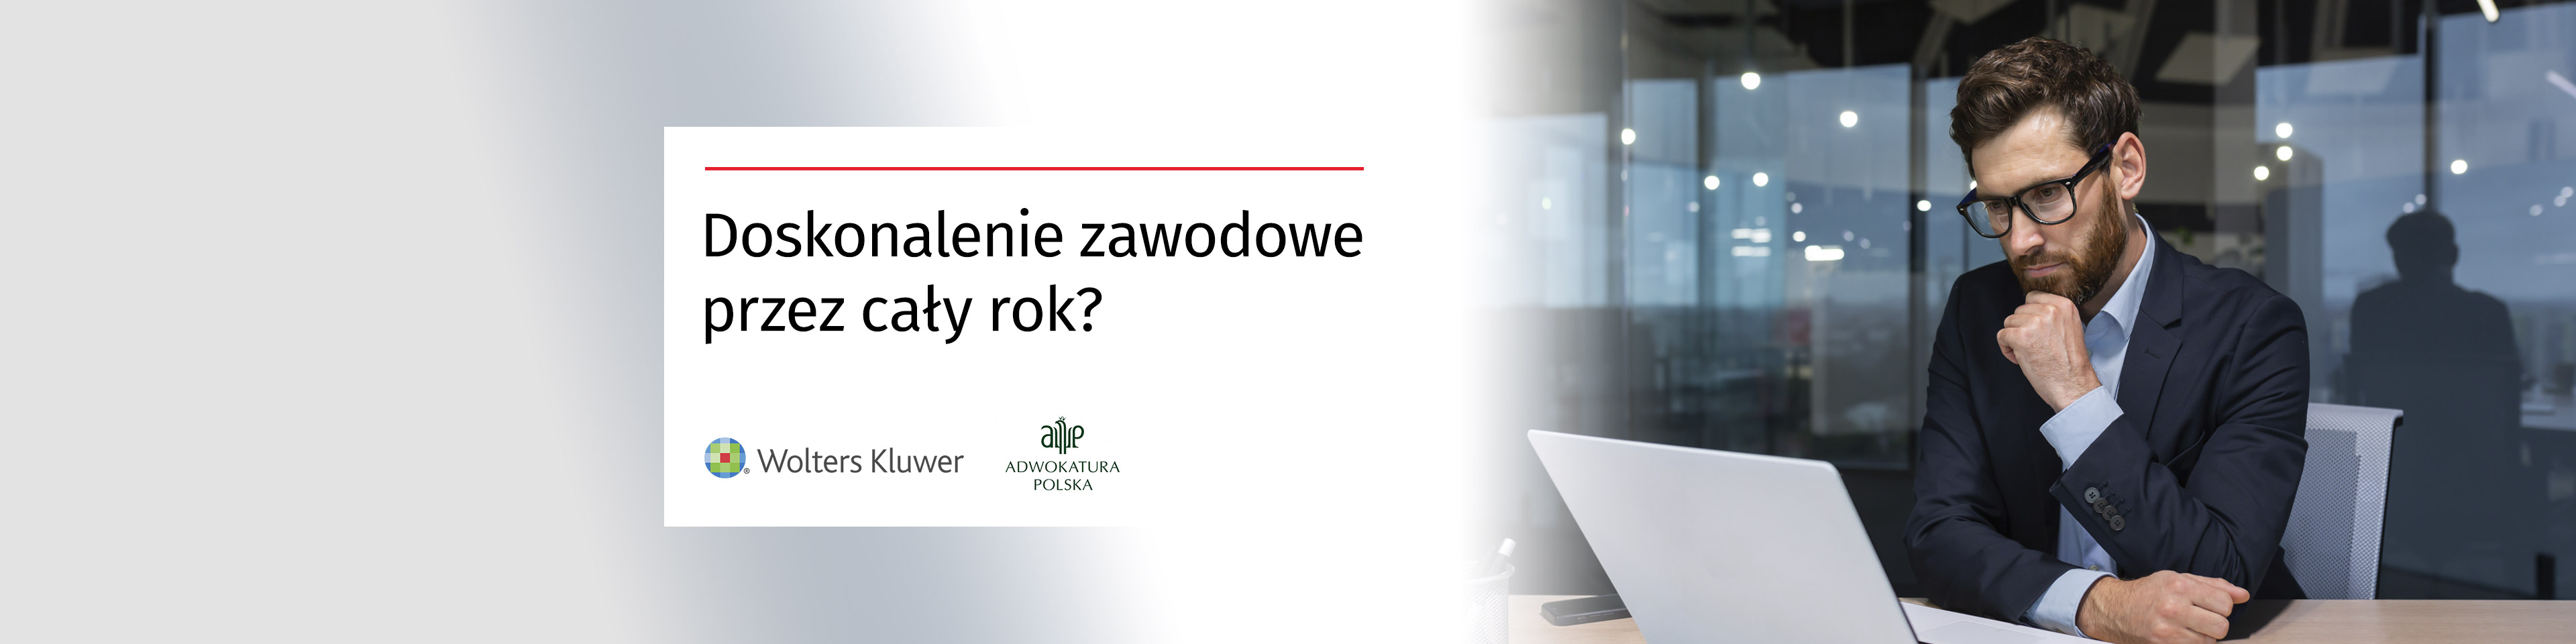 Wolters Kluwer Polska i Naczelna Rada Adwokacka – współpraca w obszarze kształcenia zawodowego